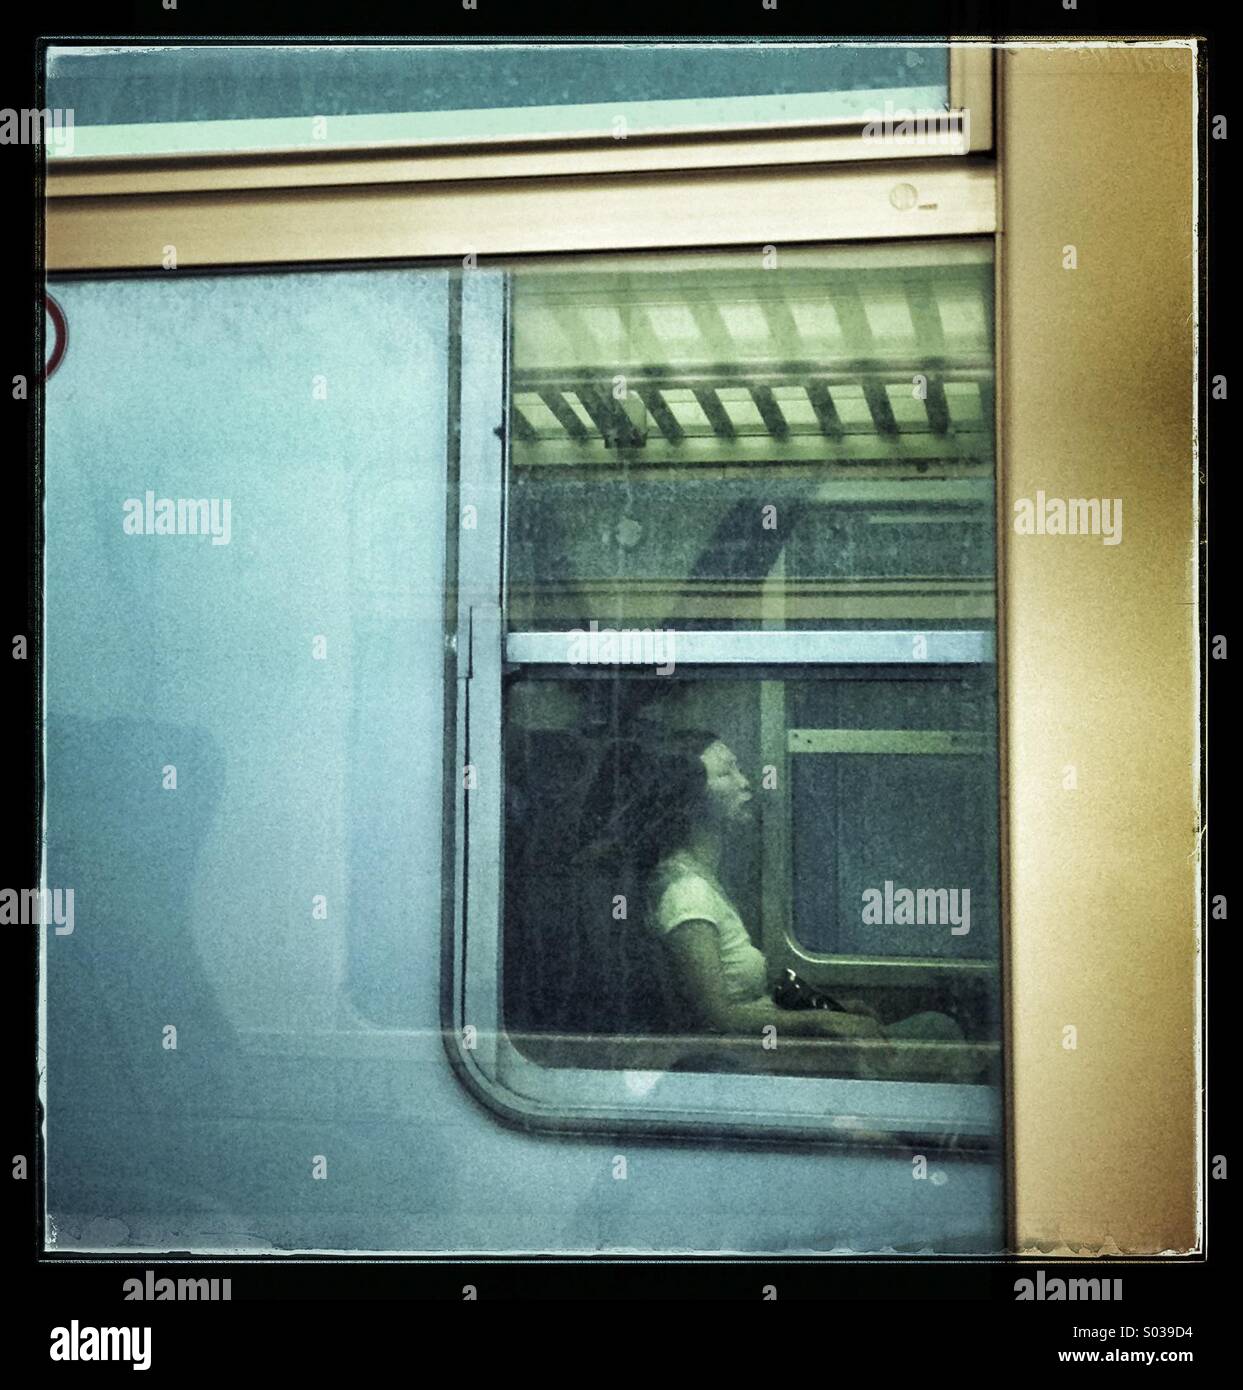 Oriental woman through the train windows Stock Photo